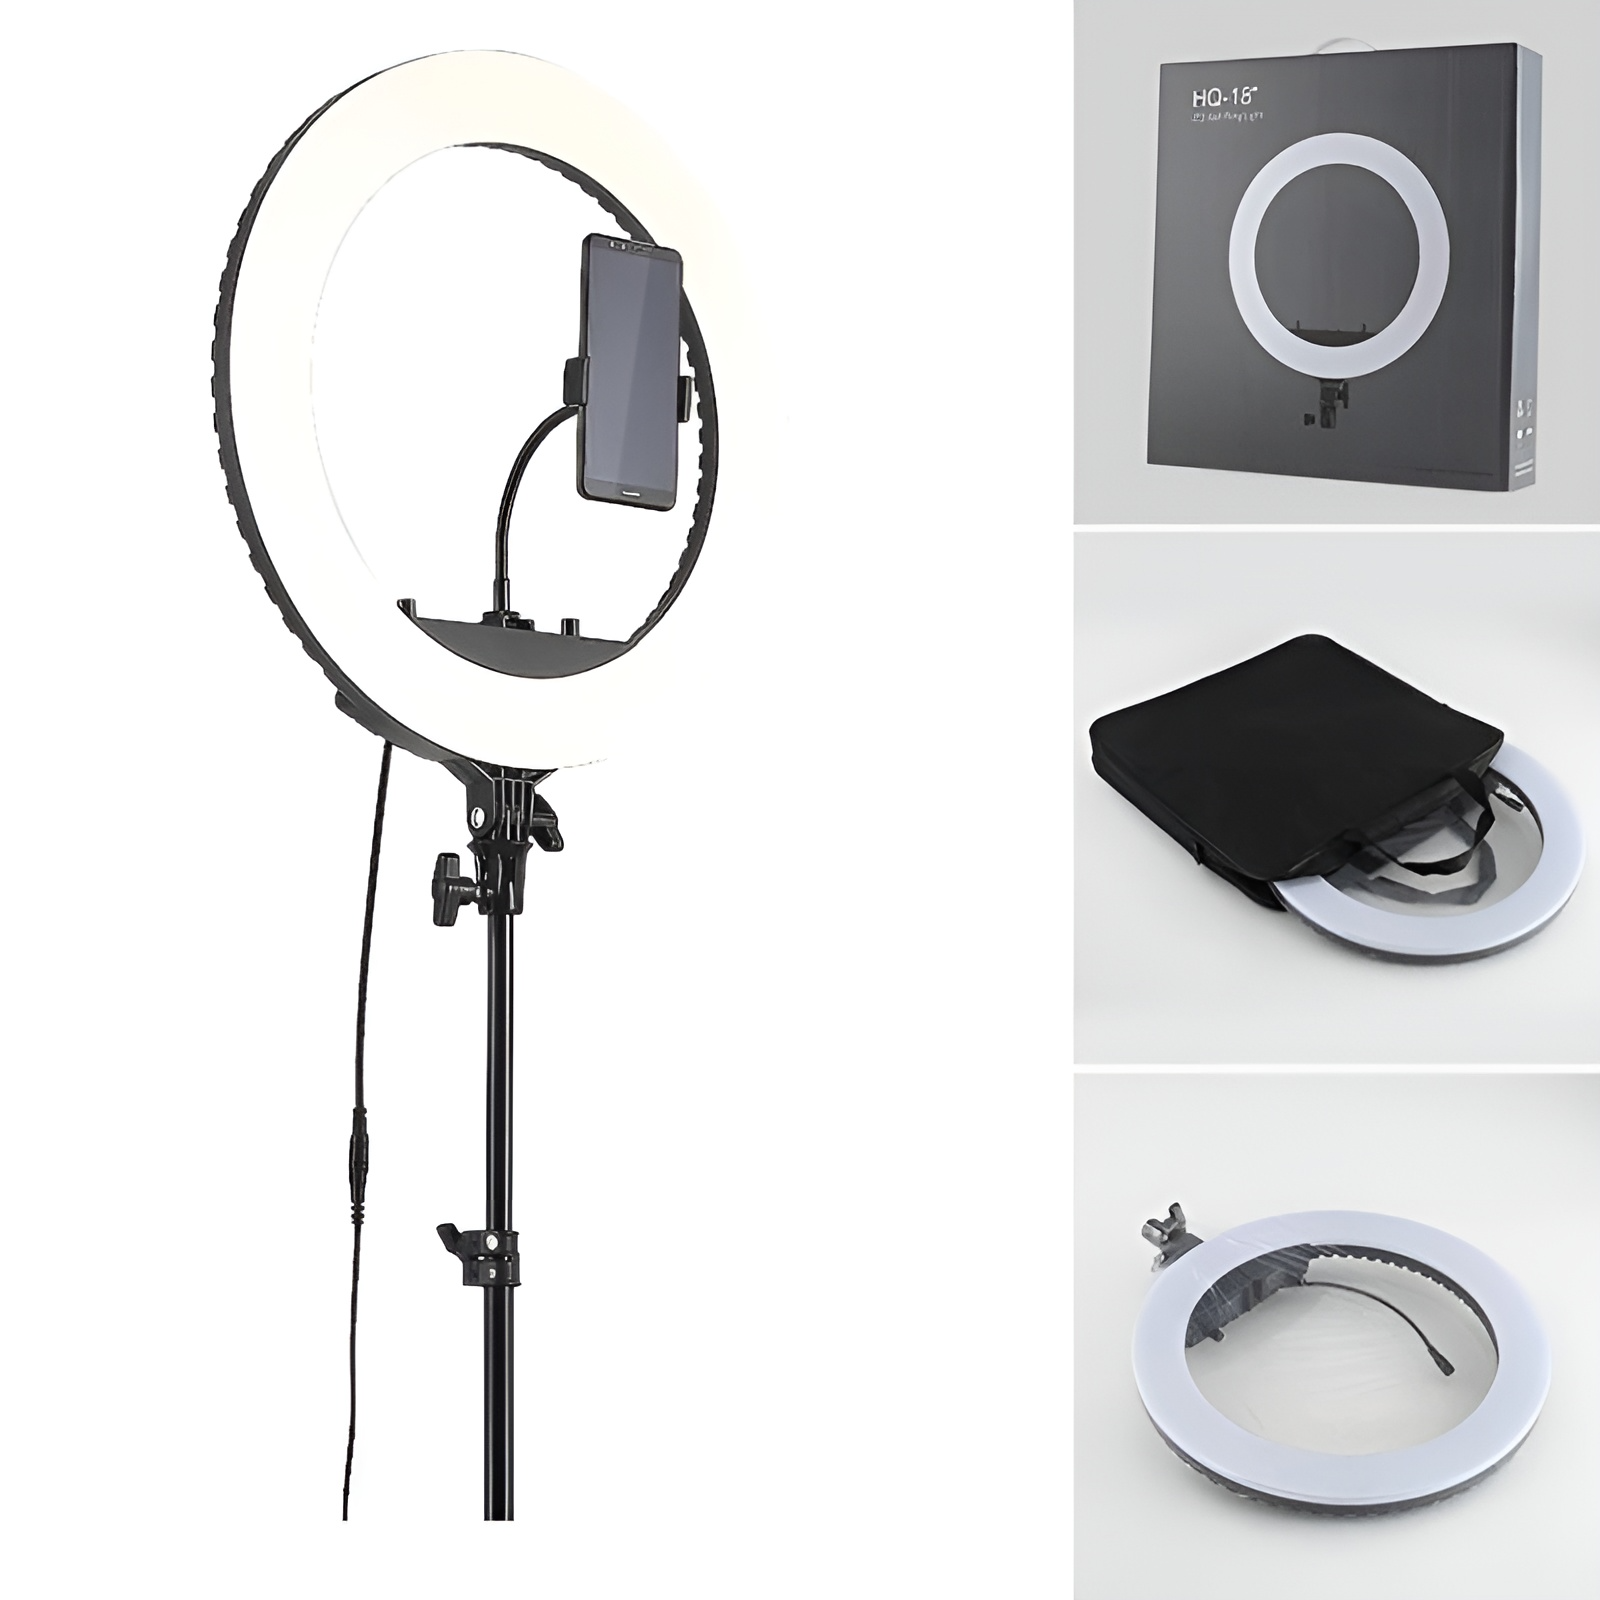 Bộ giá đỡ tripod tích hợp đèn livestream selfie 3 chế độ sáng HQ-18 (1 đầu kẹp) và HQ-18N (3 đầu kẹp) - Hàng chính hãng